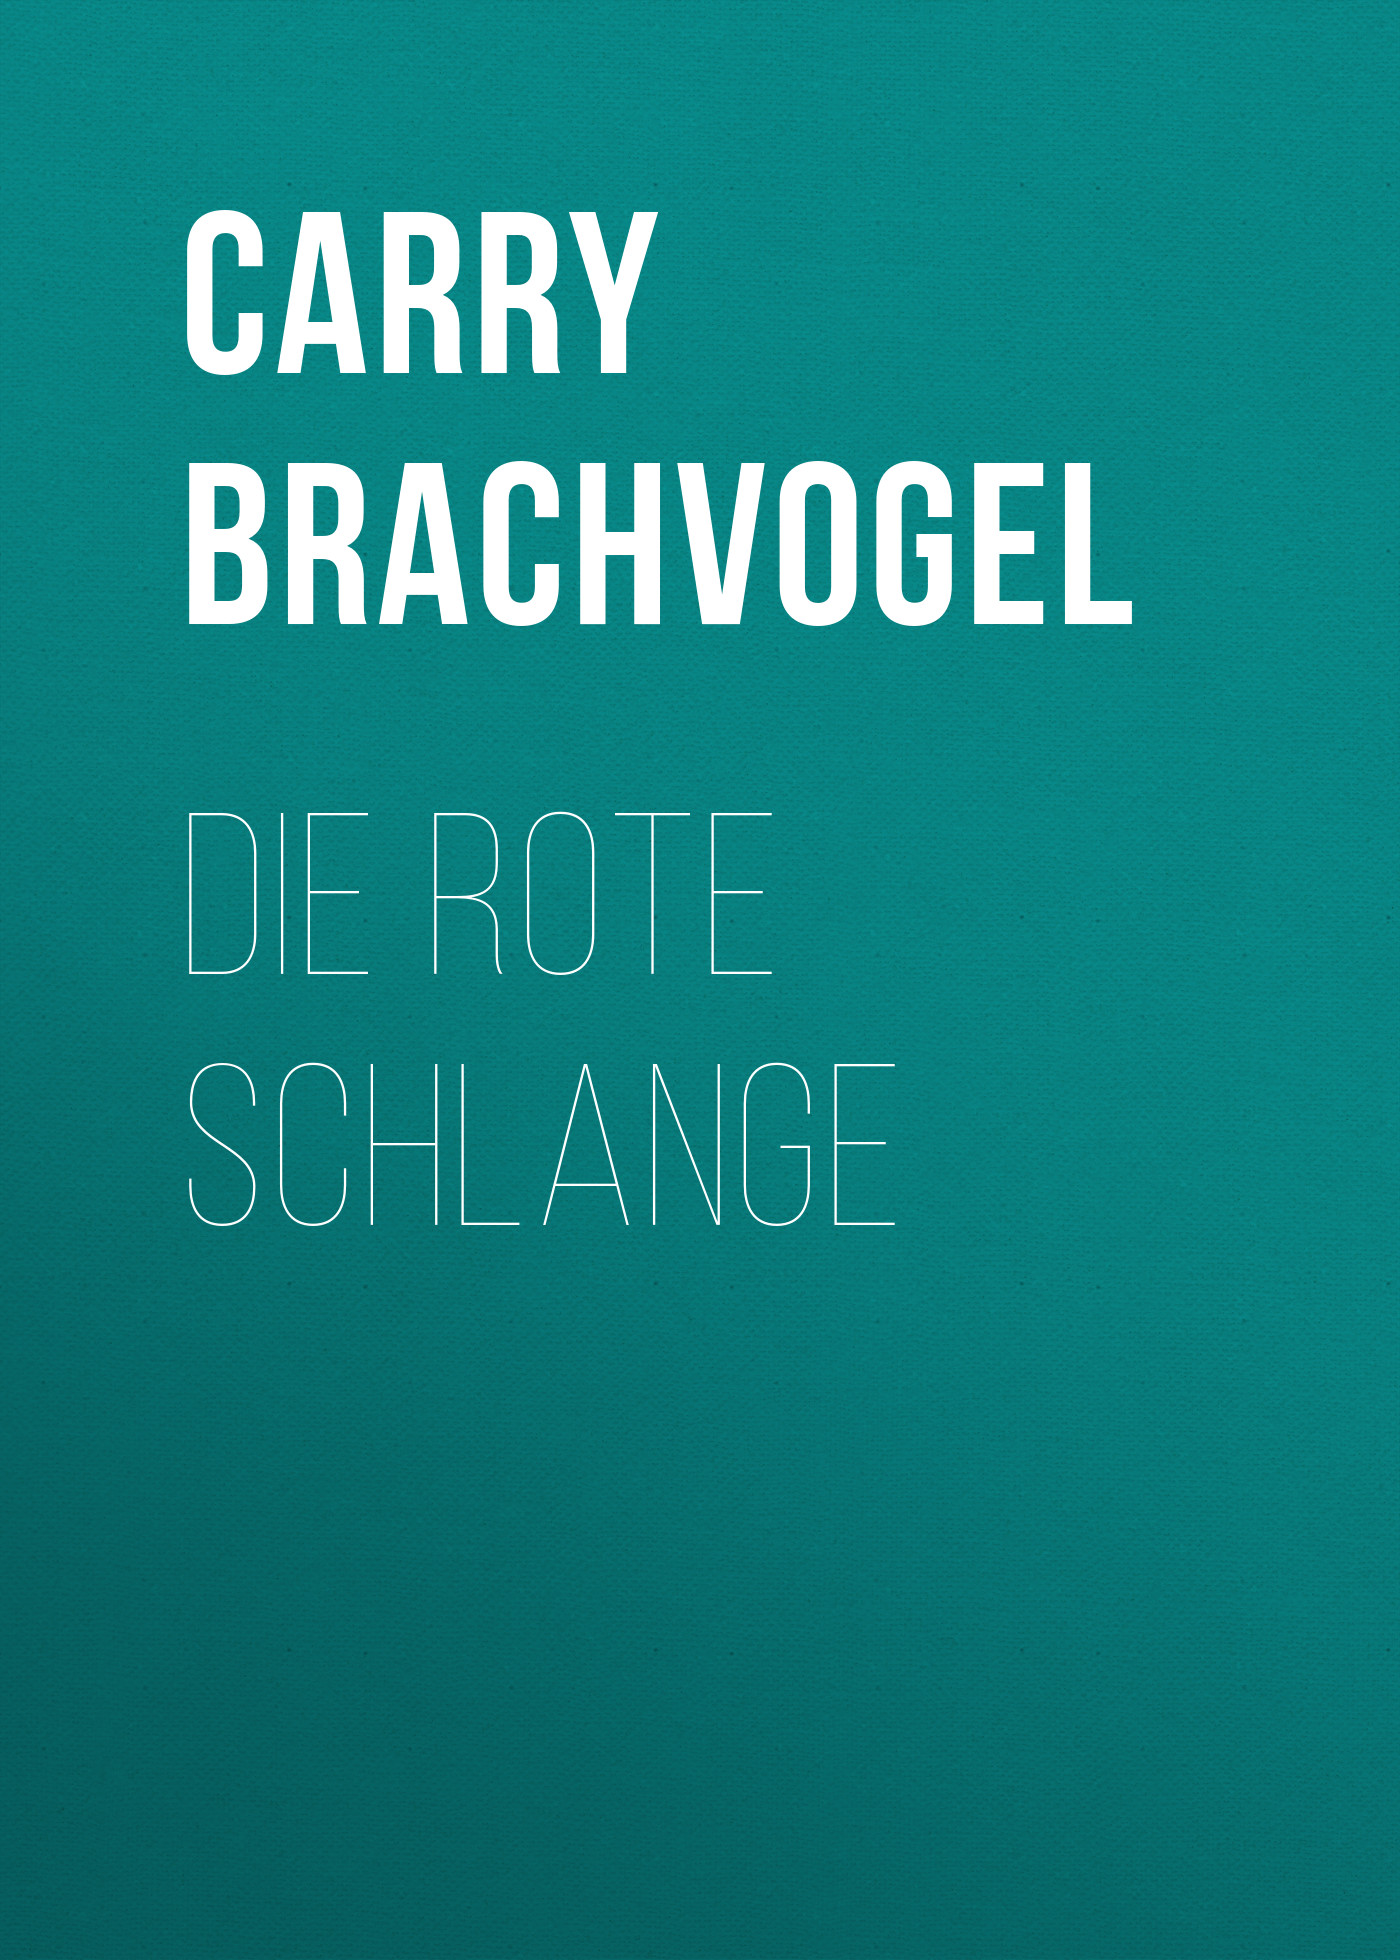 Книга Die rote Schlange из серии , созданная Carry Brachvogel, может относится к жанру Зарубежная классика. Стоимость электронной книги Die rote Schlange с идентификатором 48633068 составляет 0 руб.